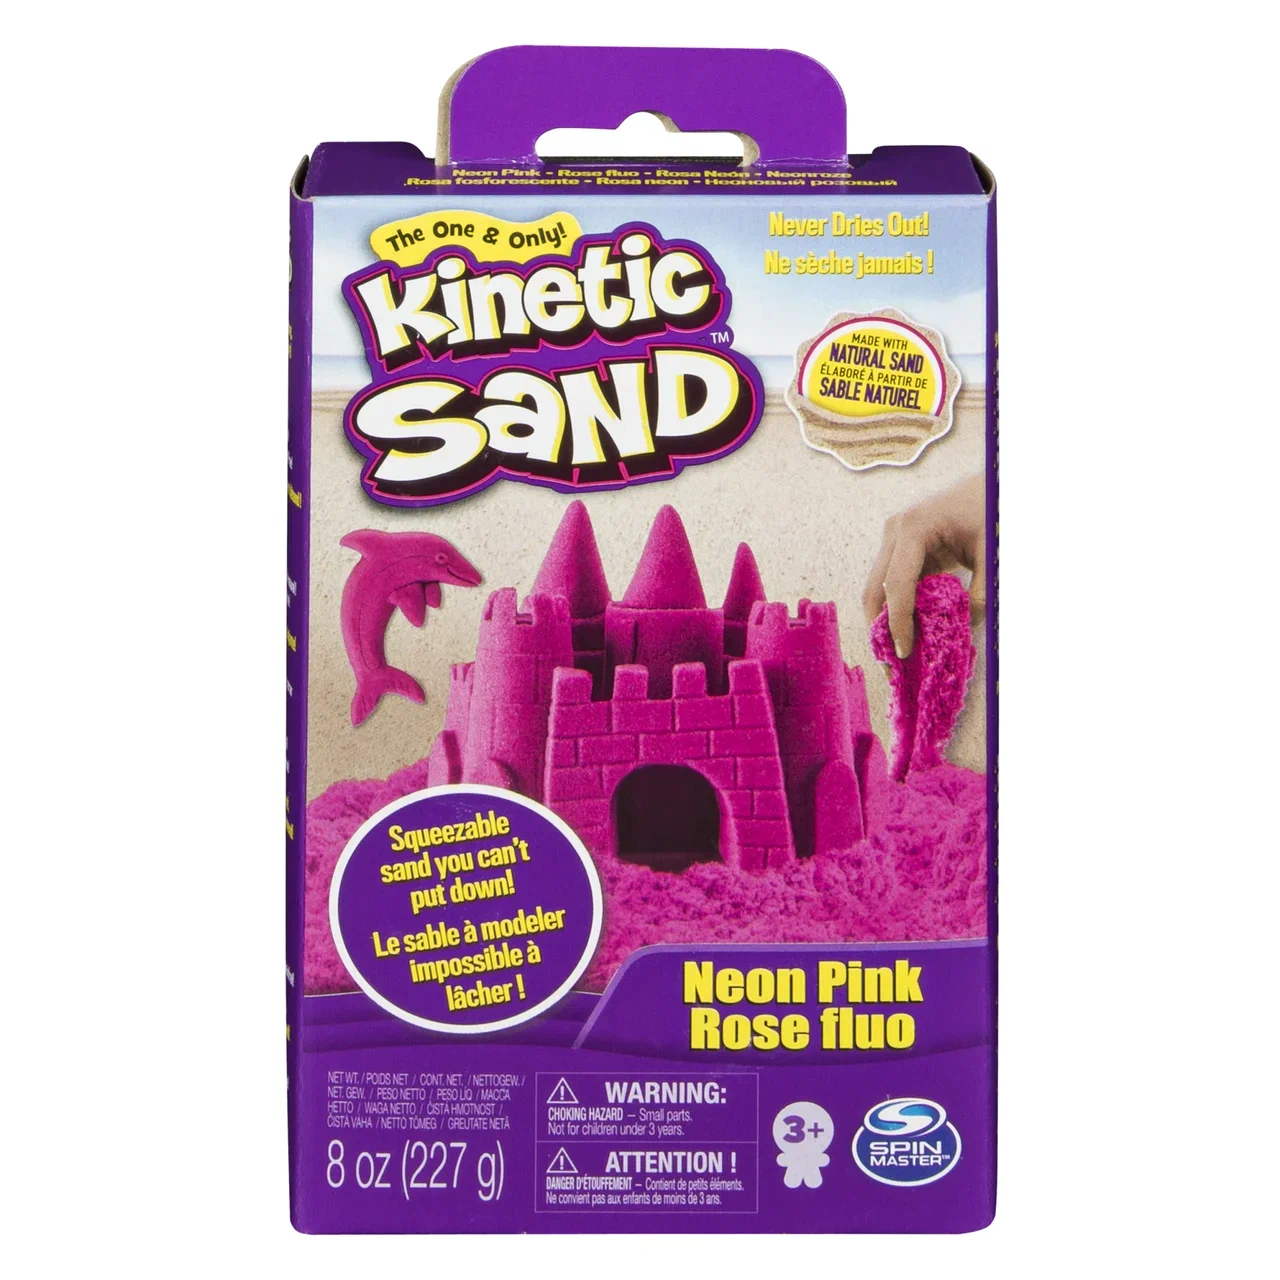 Kinetic Sand Кинетический песок Набор для лепки 6033332